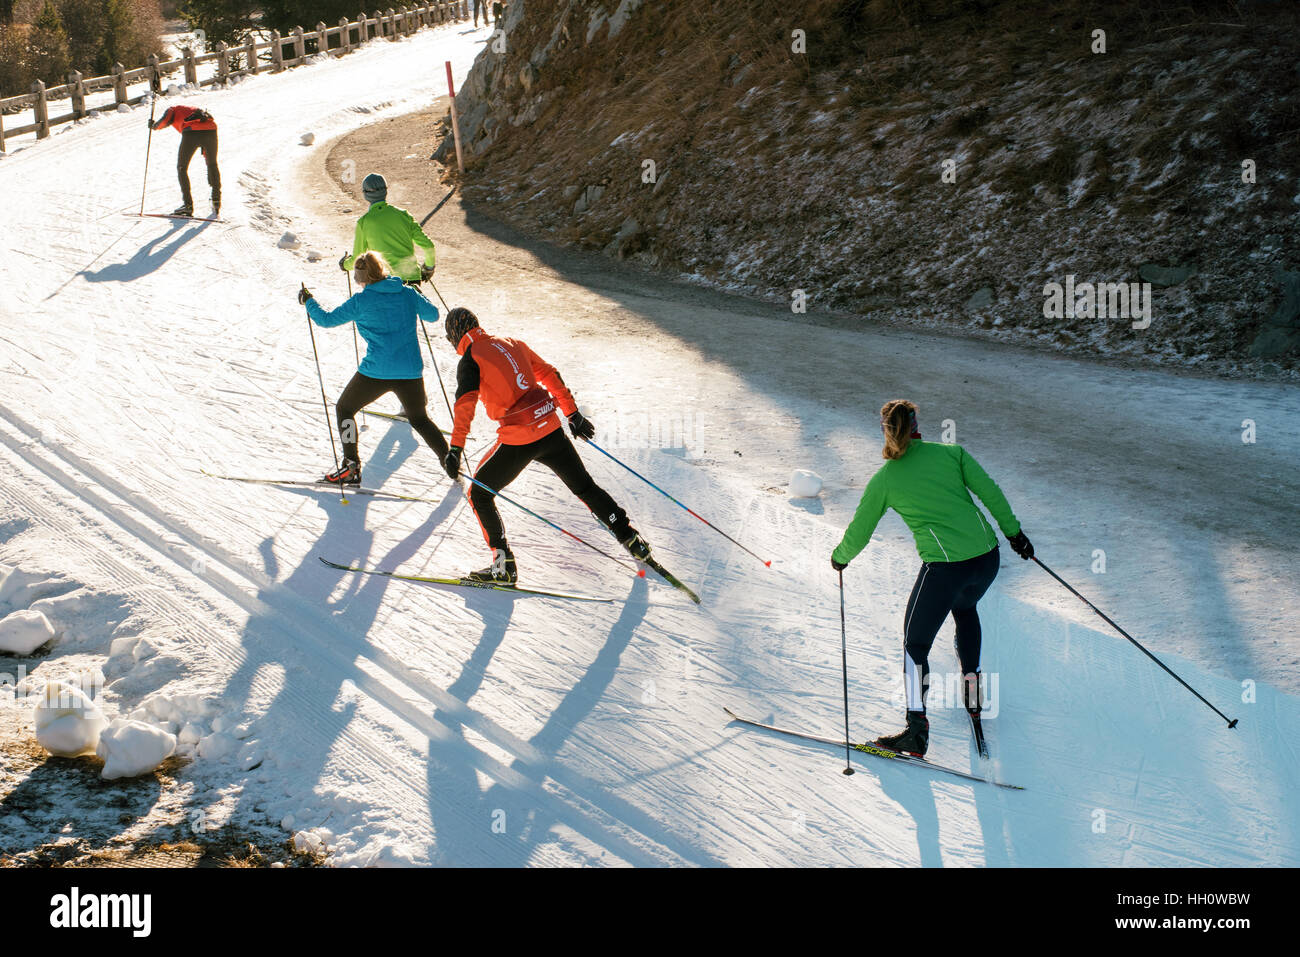 Junges Team Ski Crosstraining Land auf einer kurvenreichen Bergstraße in bunten Ski-Kleidung Stockfoto